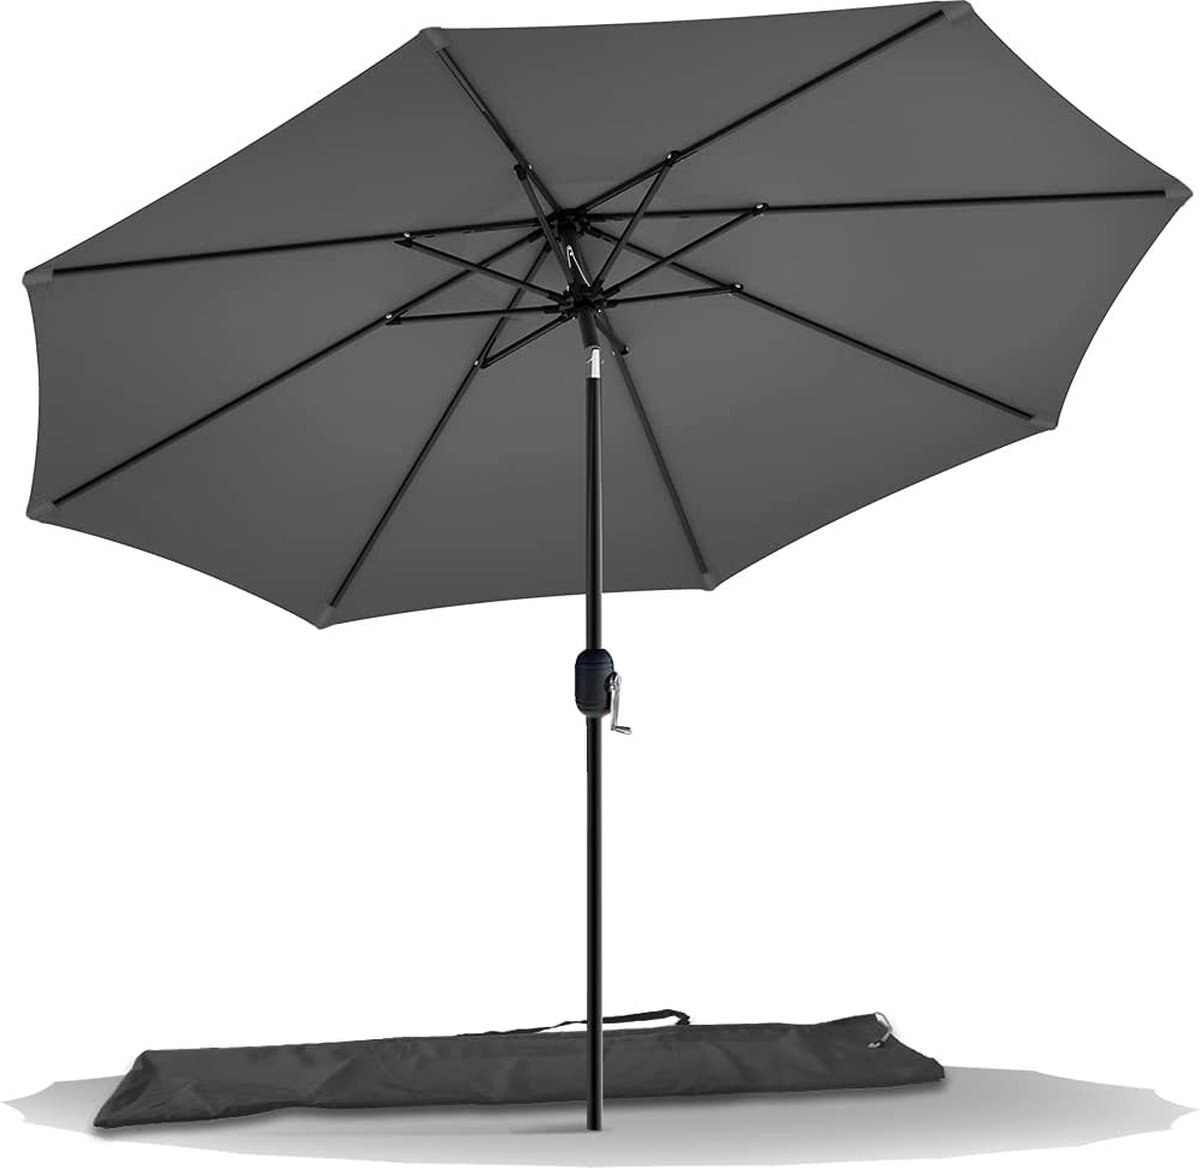 VOUNOT Parasol 270 cm met zwengel, knikbaar, zonwering, uv-bescherming, balkonscherm, tuinscherm marktscherm met beschermhoes,Ø270cm, Knickbar, grijs